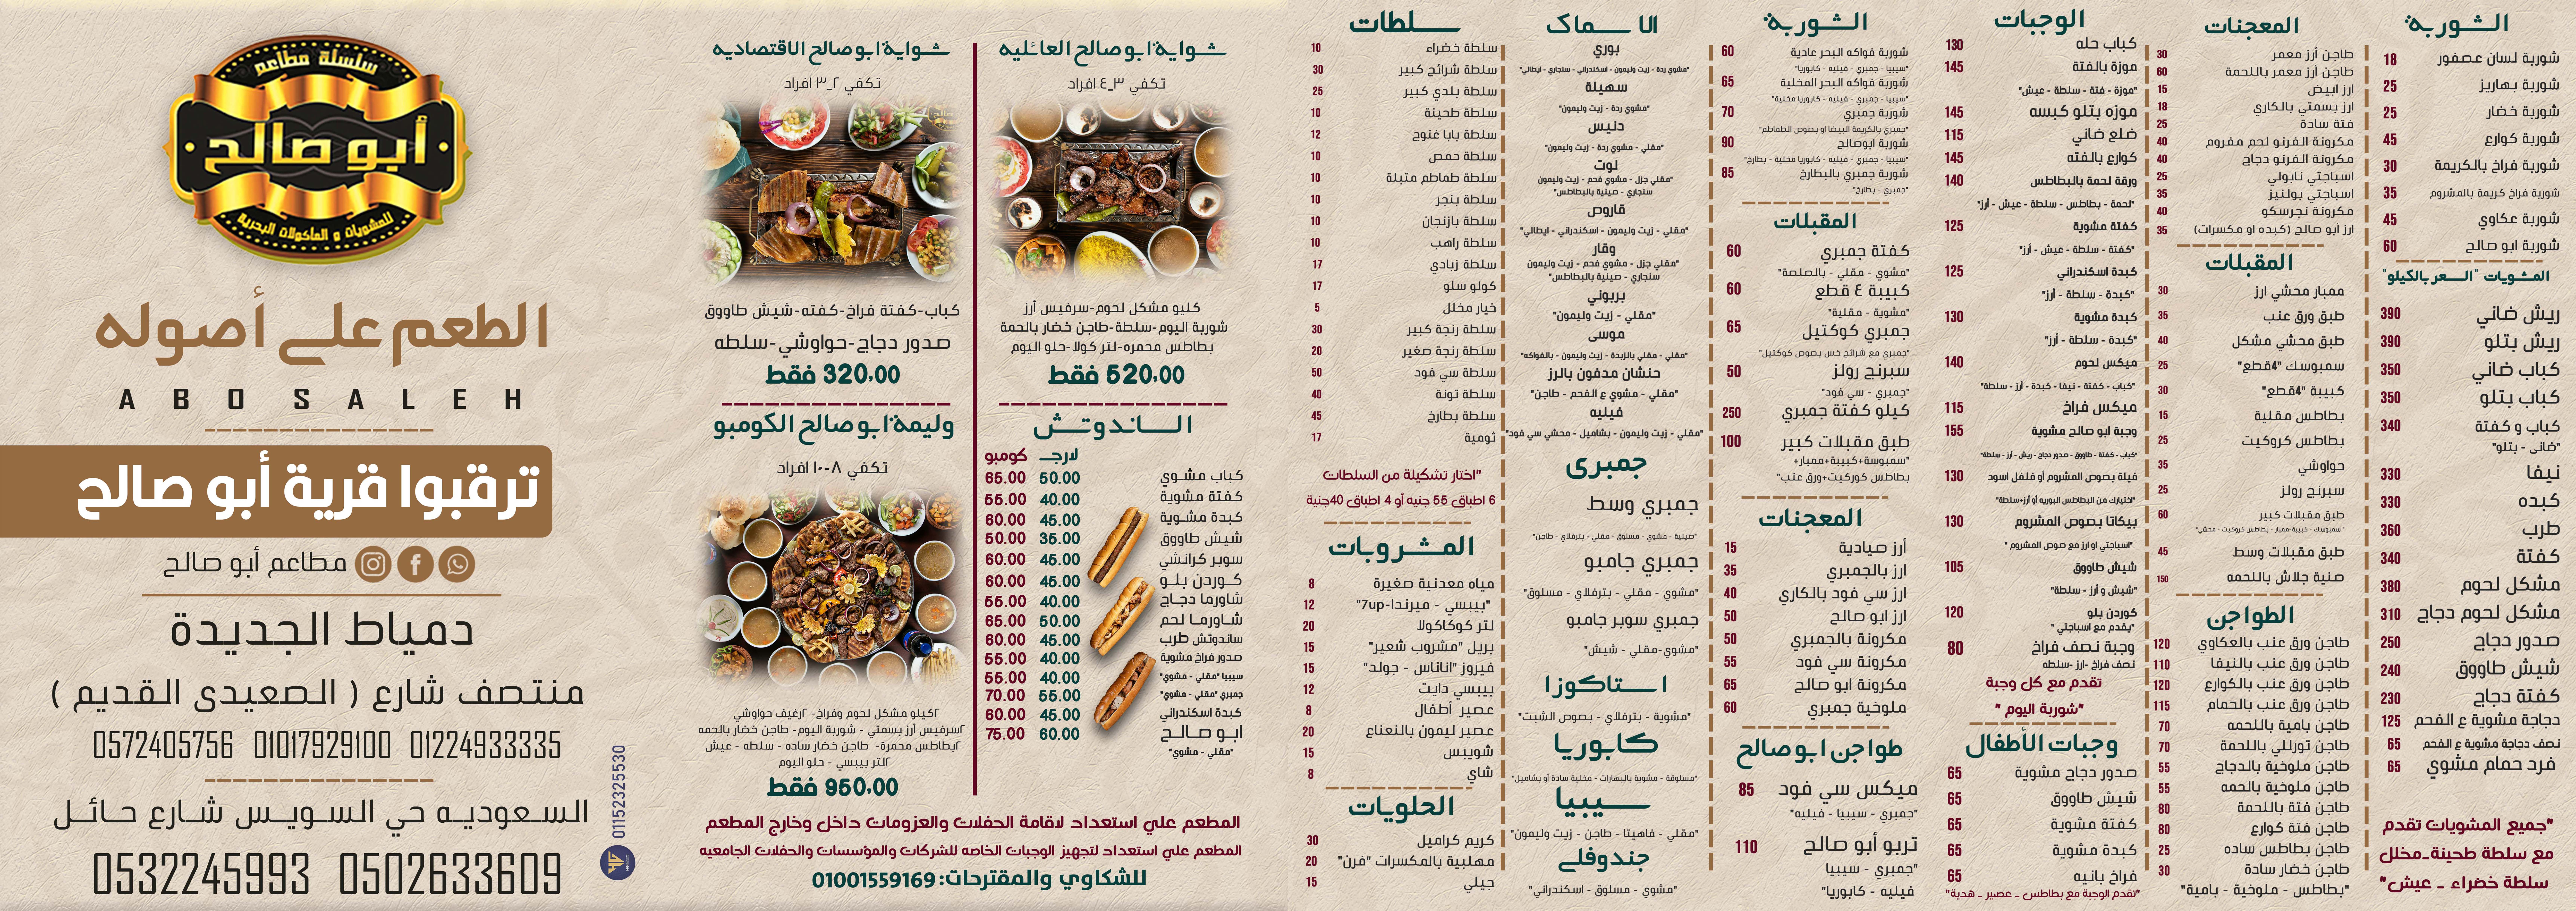 مطعم ابو صالح تبوك